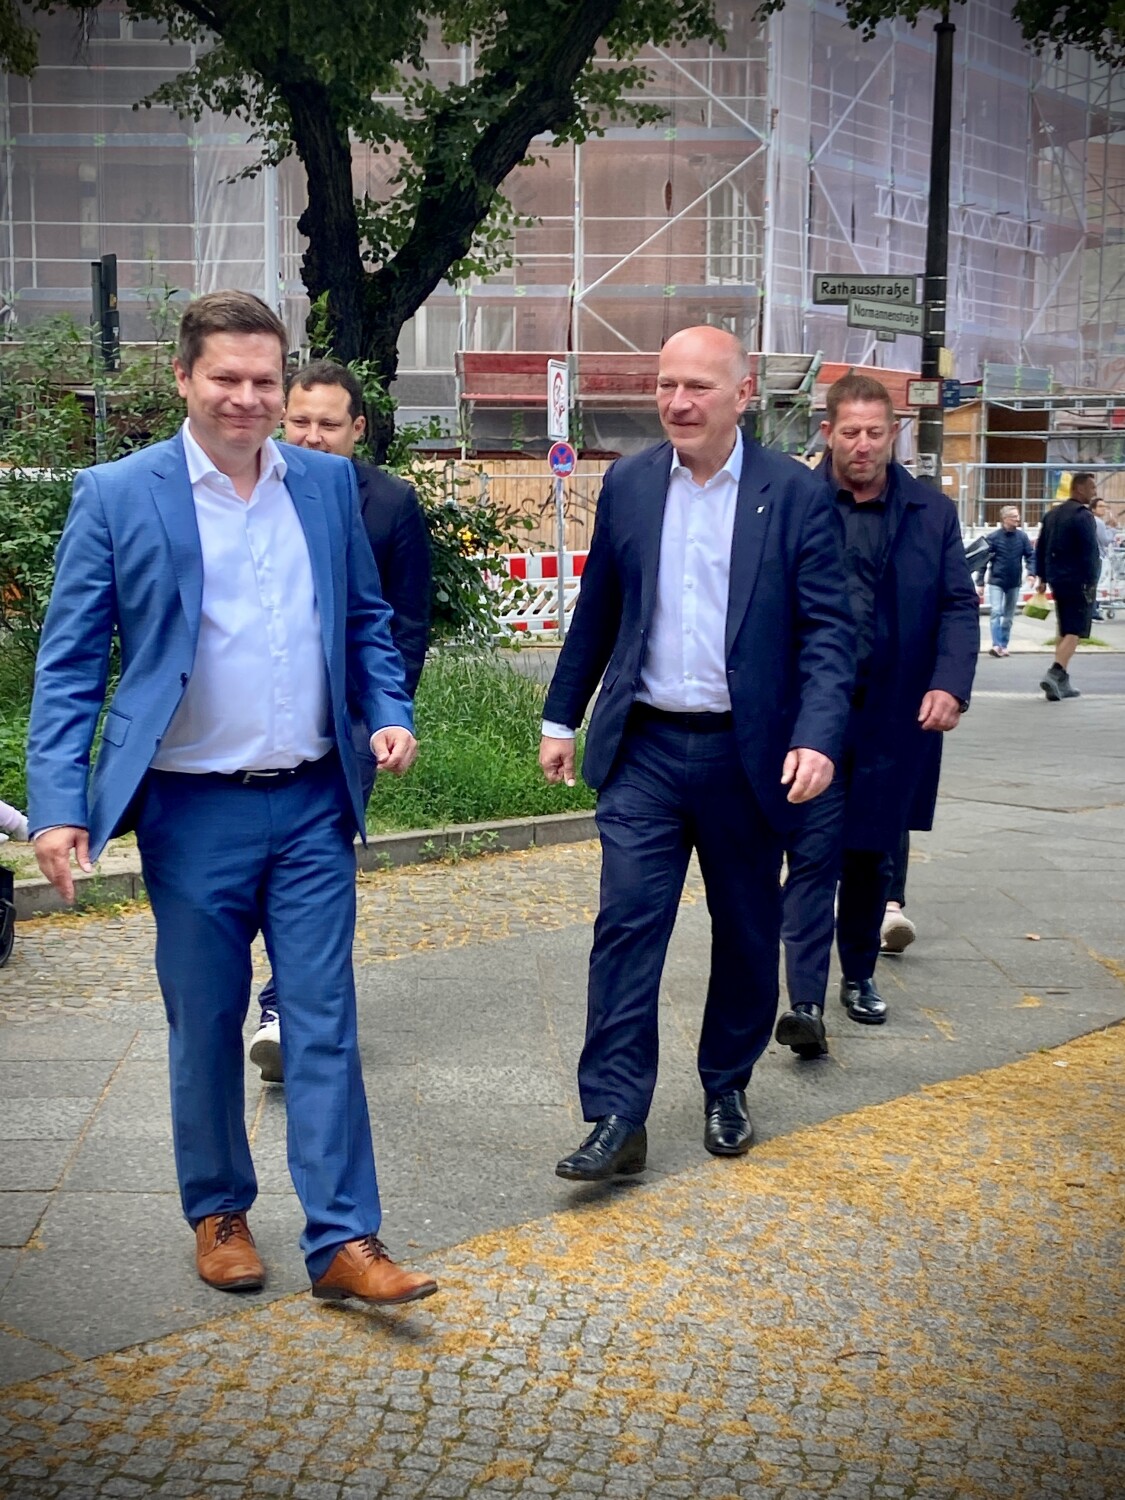 Senat vor Ort in Lichtenberg, Martin Schaefer und Kai Wegner auf dem Weg zum Tourbus